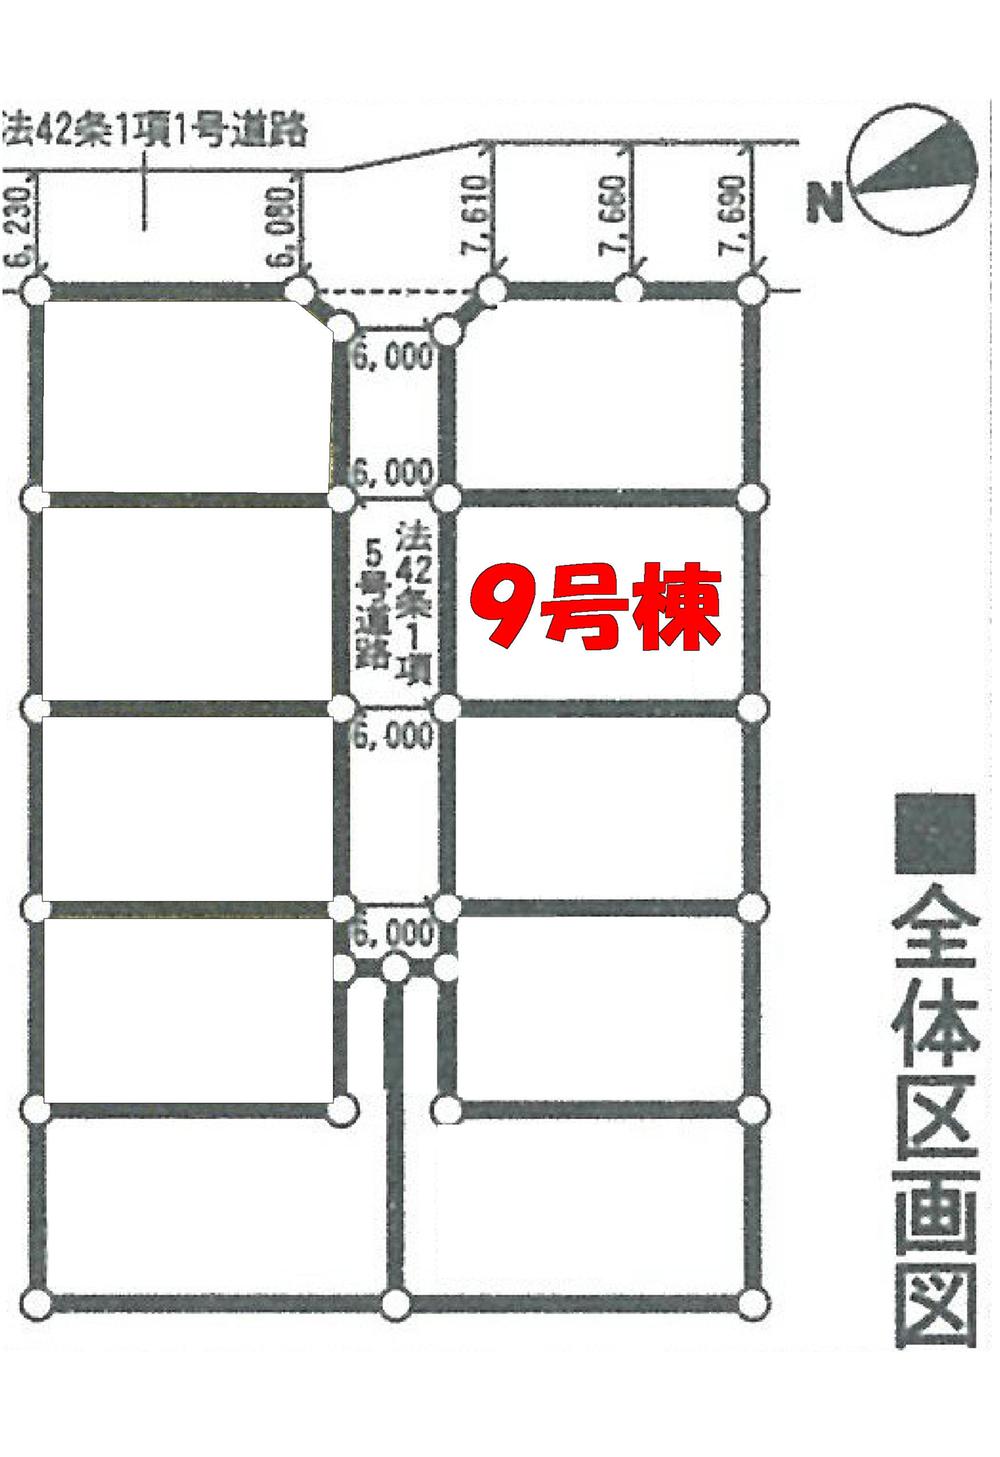 Compartment figure. 20,900,000 yen, 4LDK, Land area 164.6 sq m , Building area 98.81 sq m